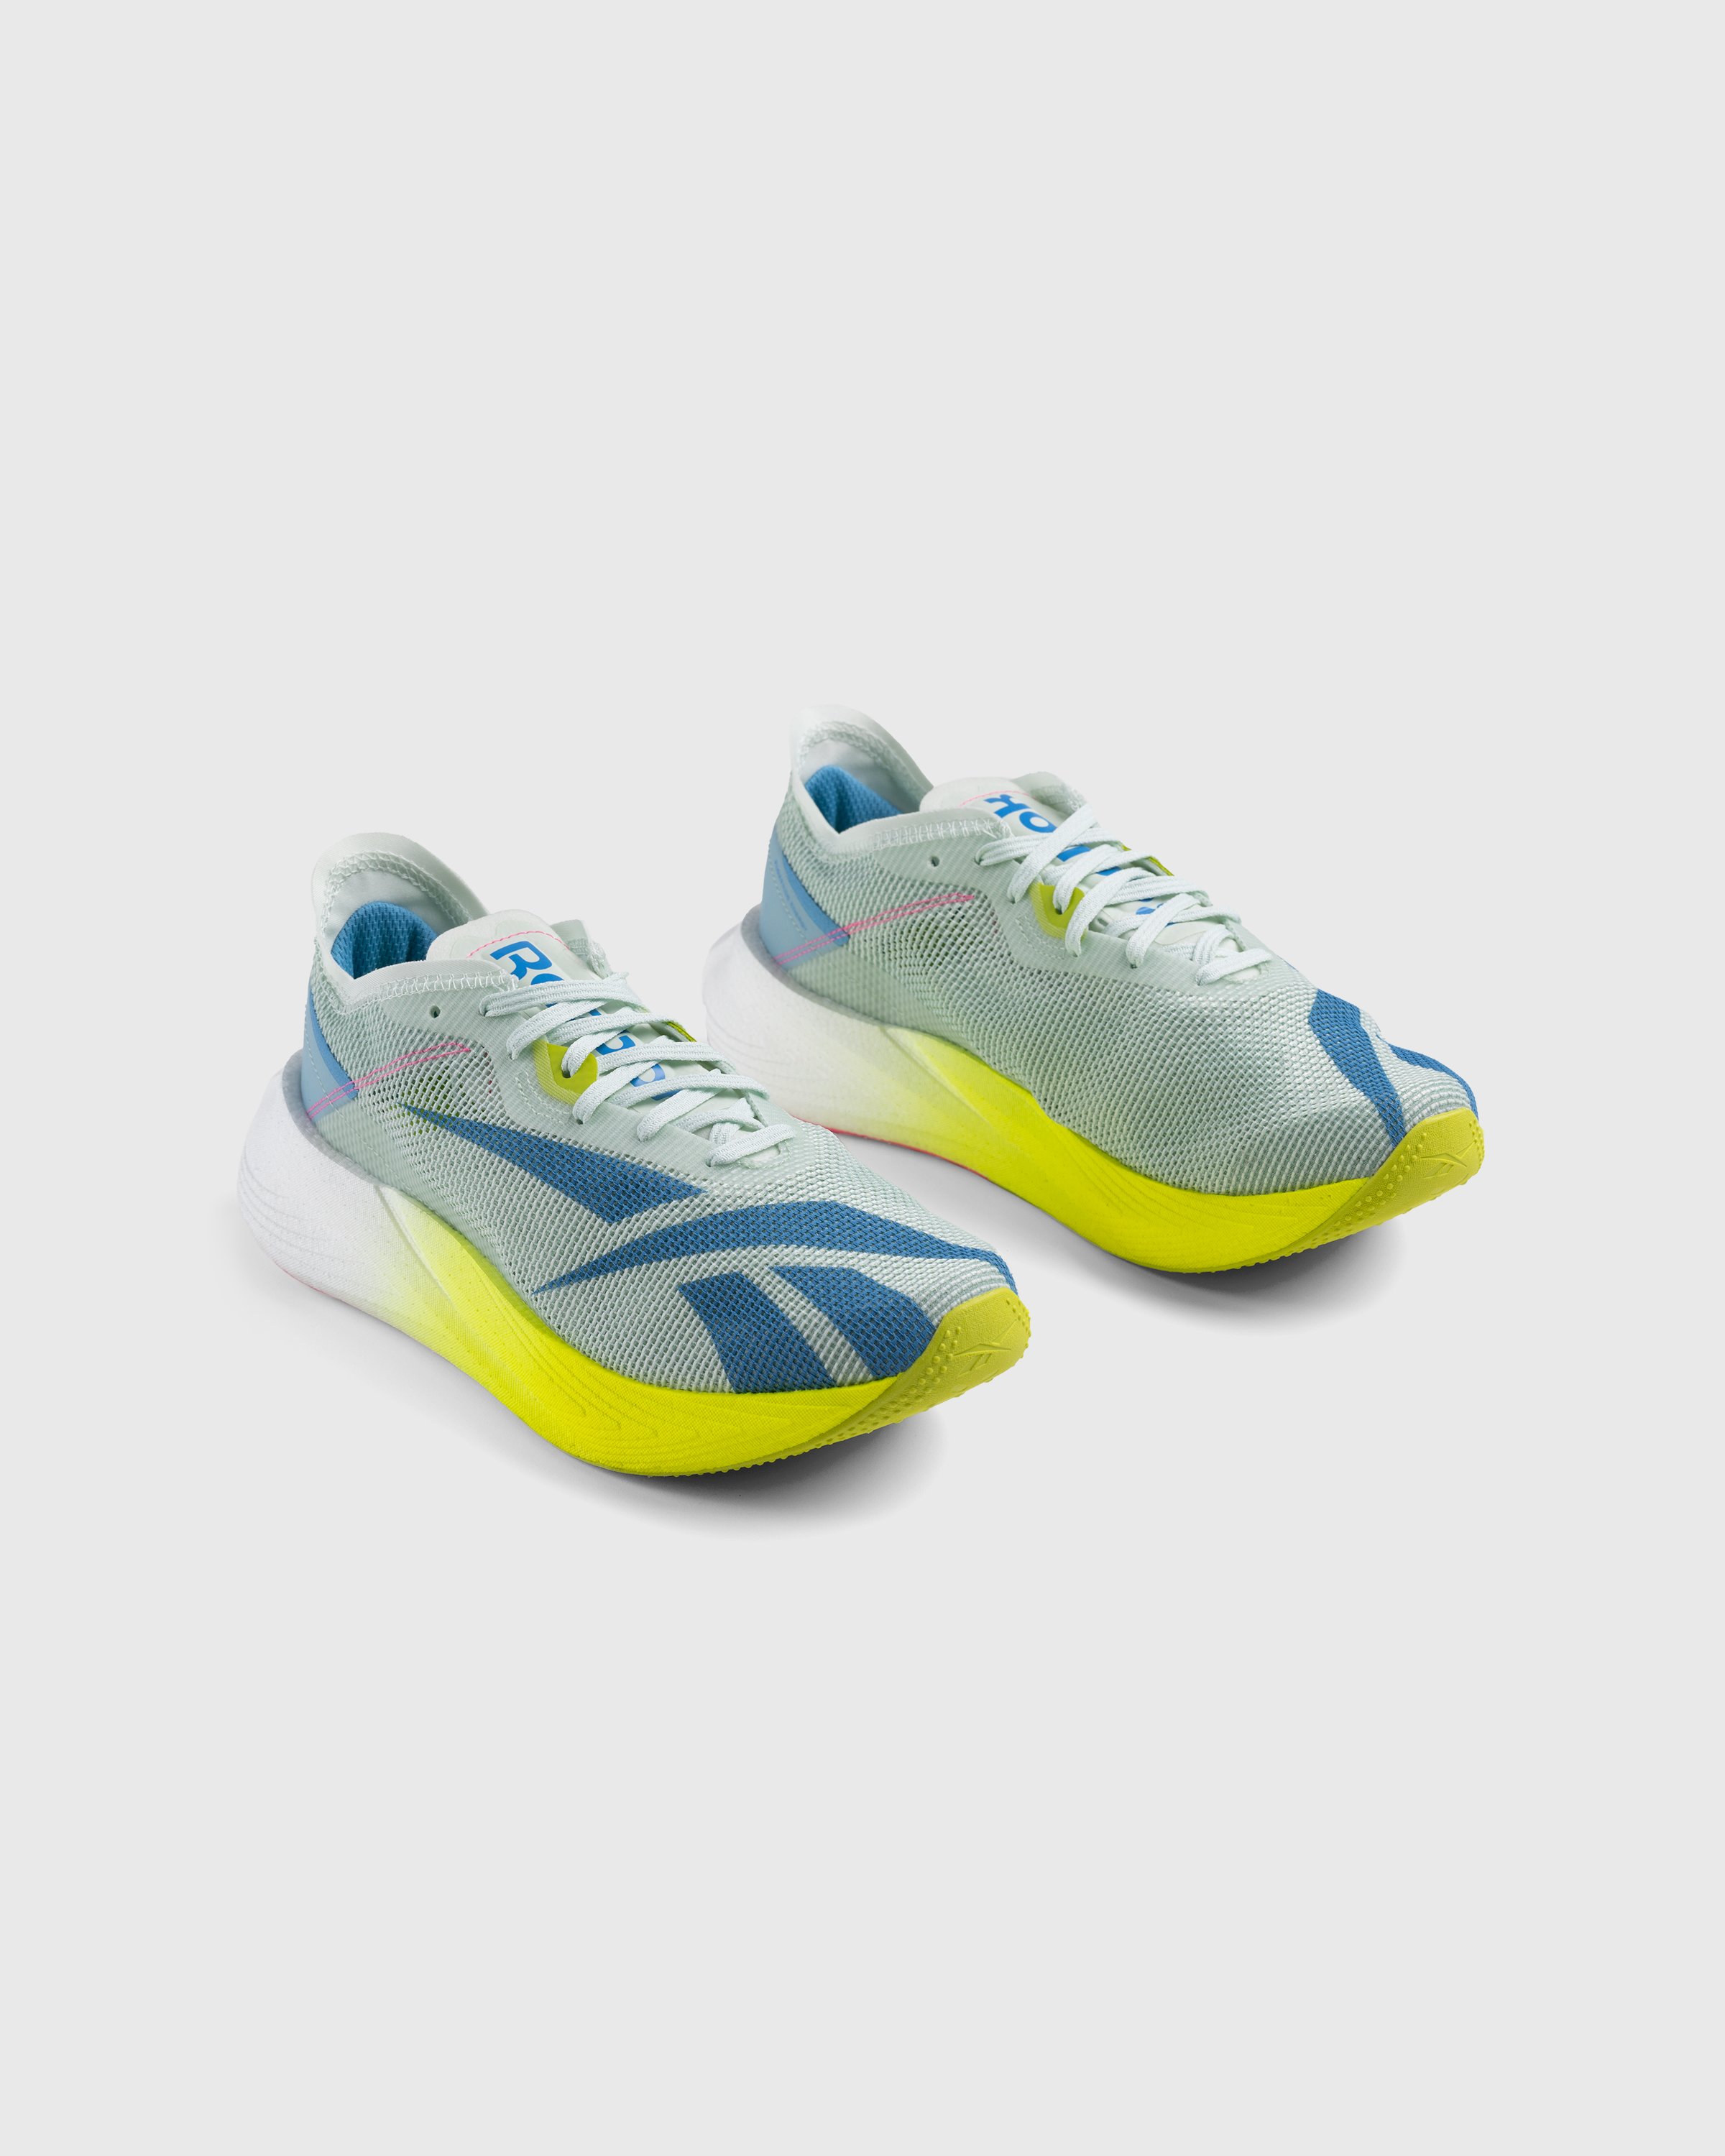 Reebok - Floatride Energy X Yellow/Blue - Footwear - Multi - Image 3